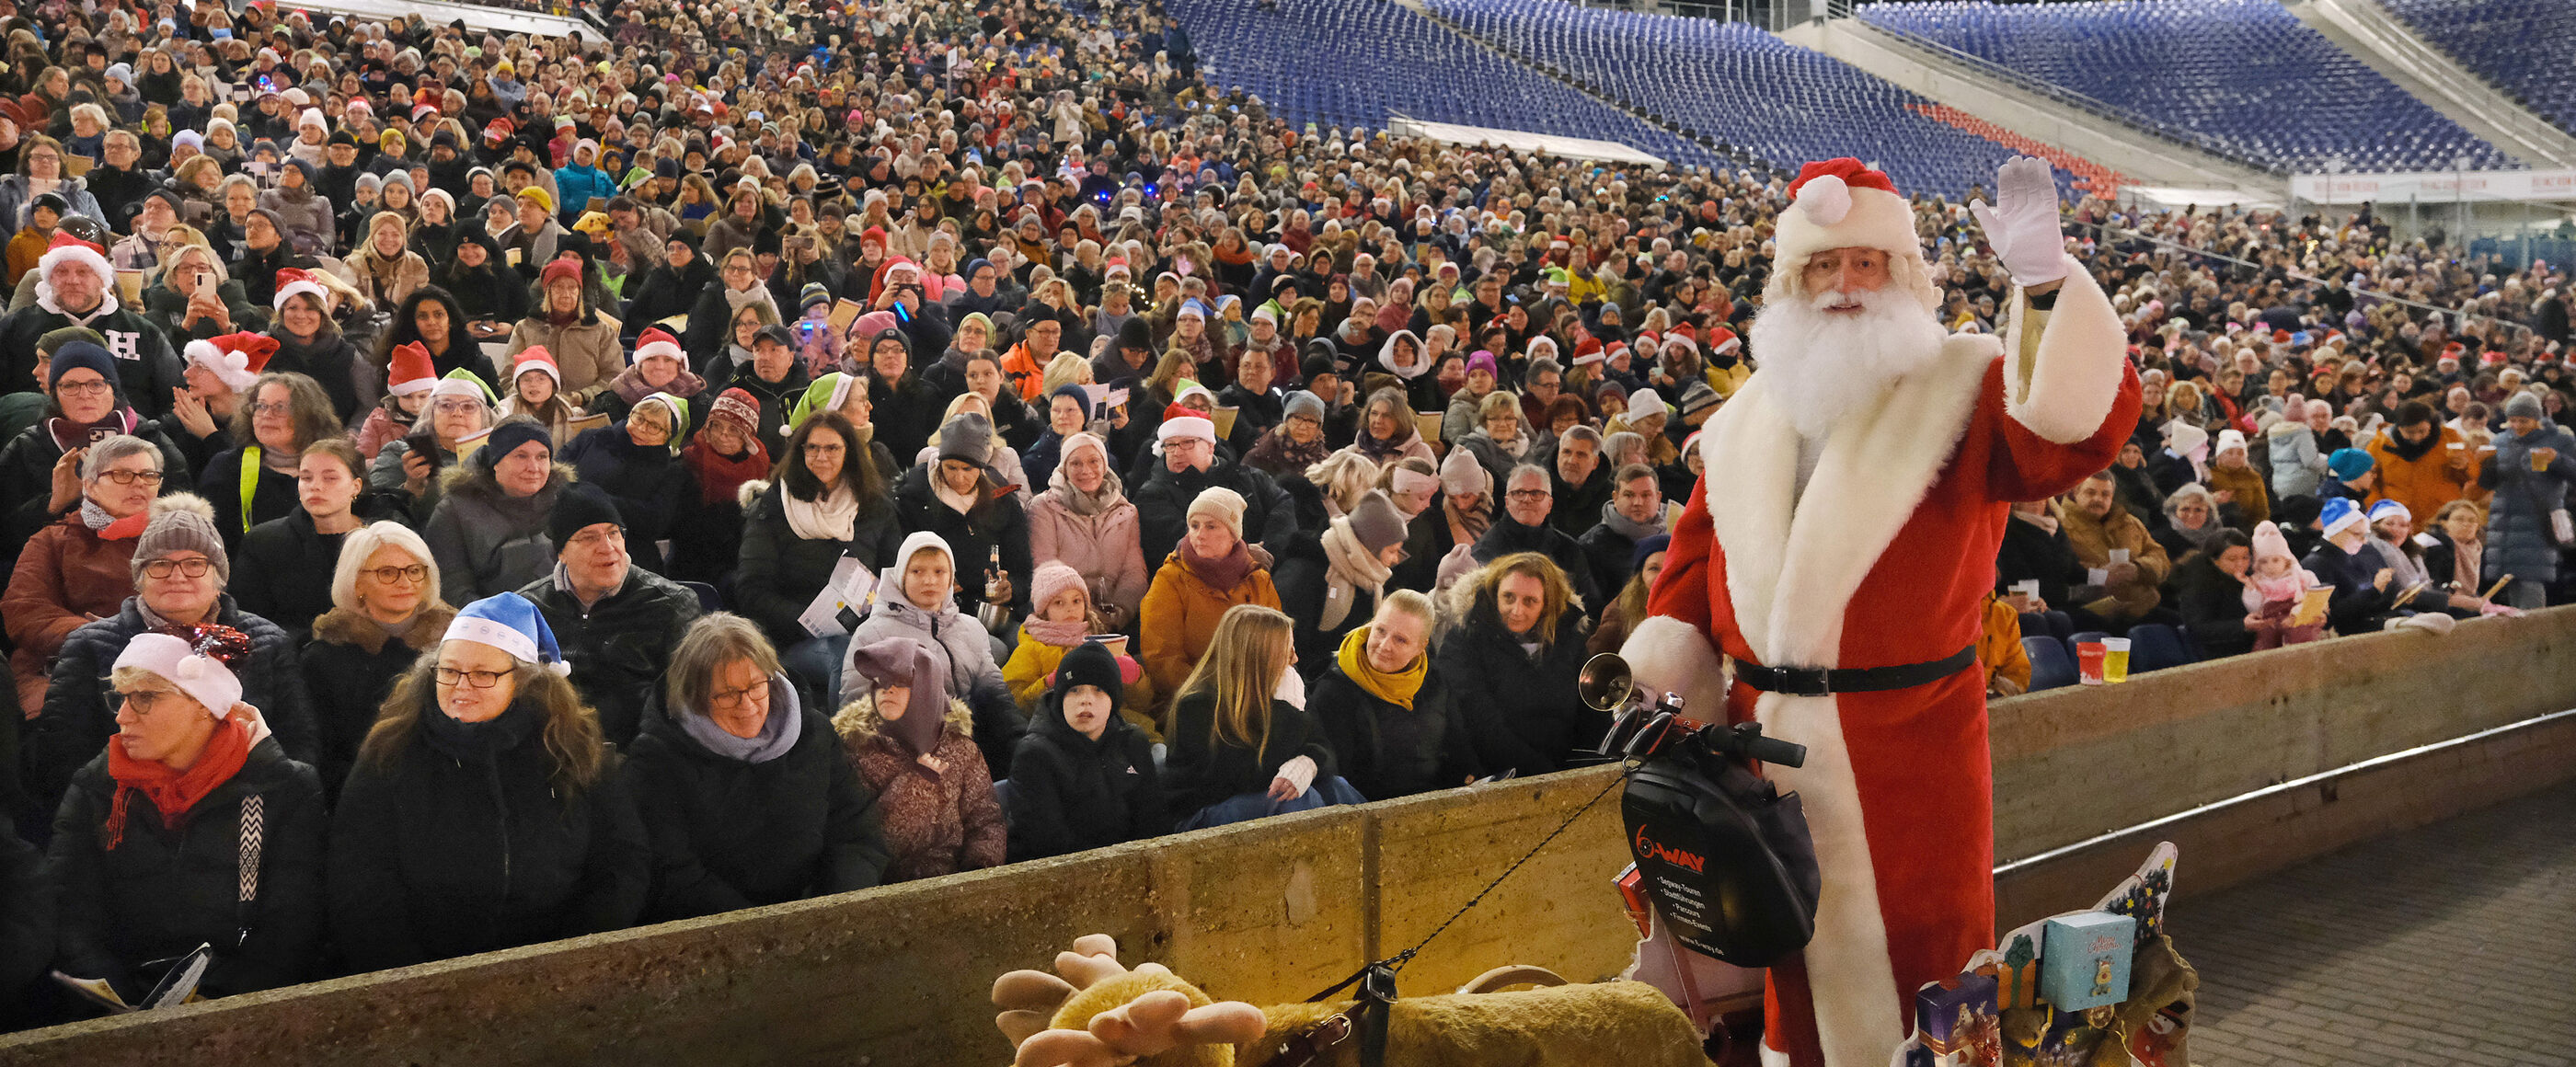 Ein Weihnachtsmann winkt vor einer Stadiontribüne voller Menschen.